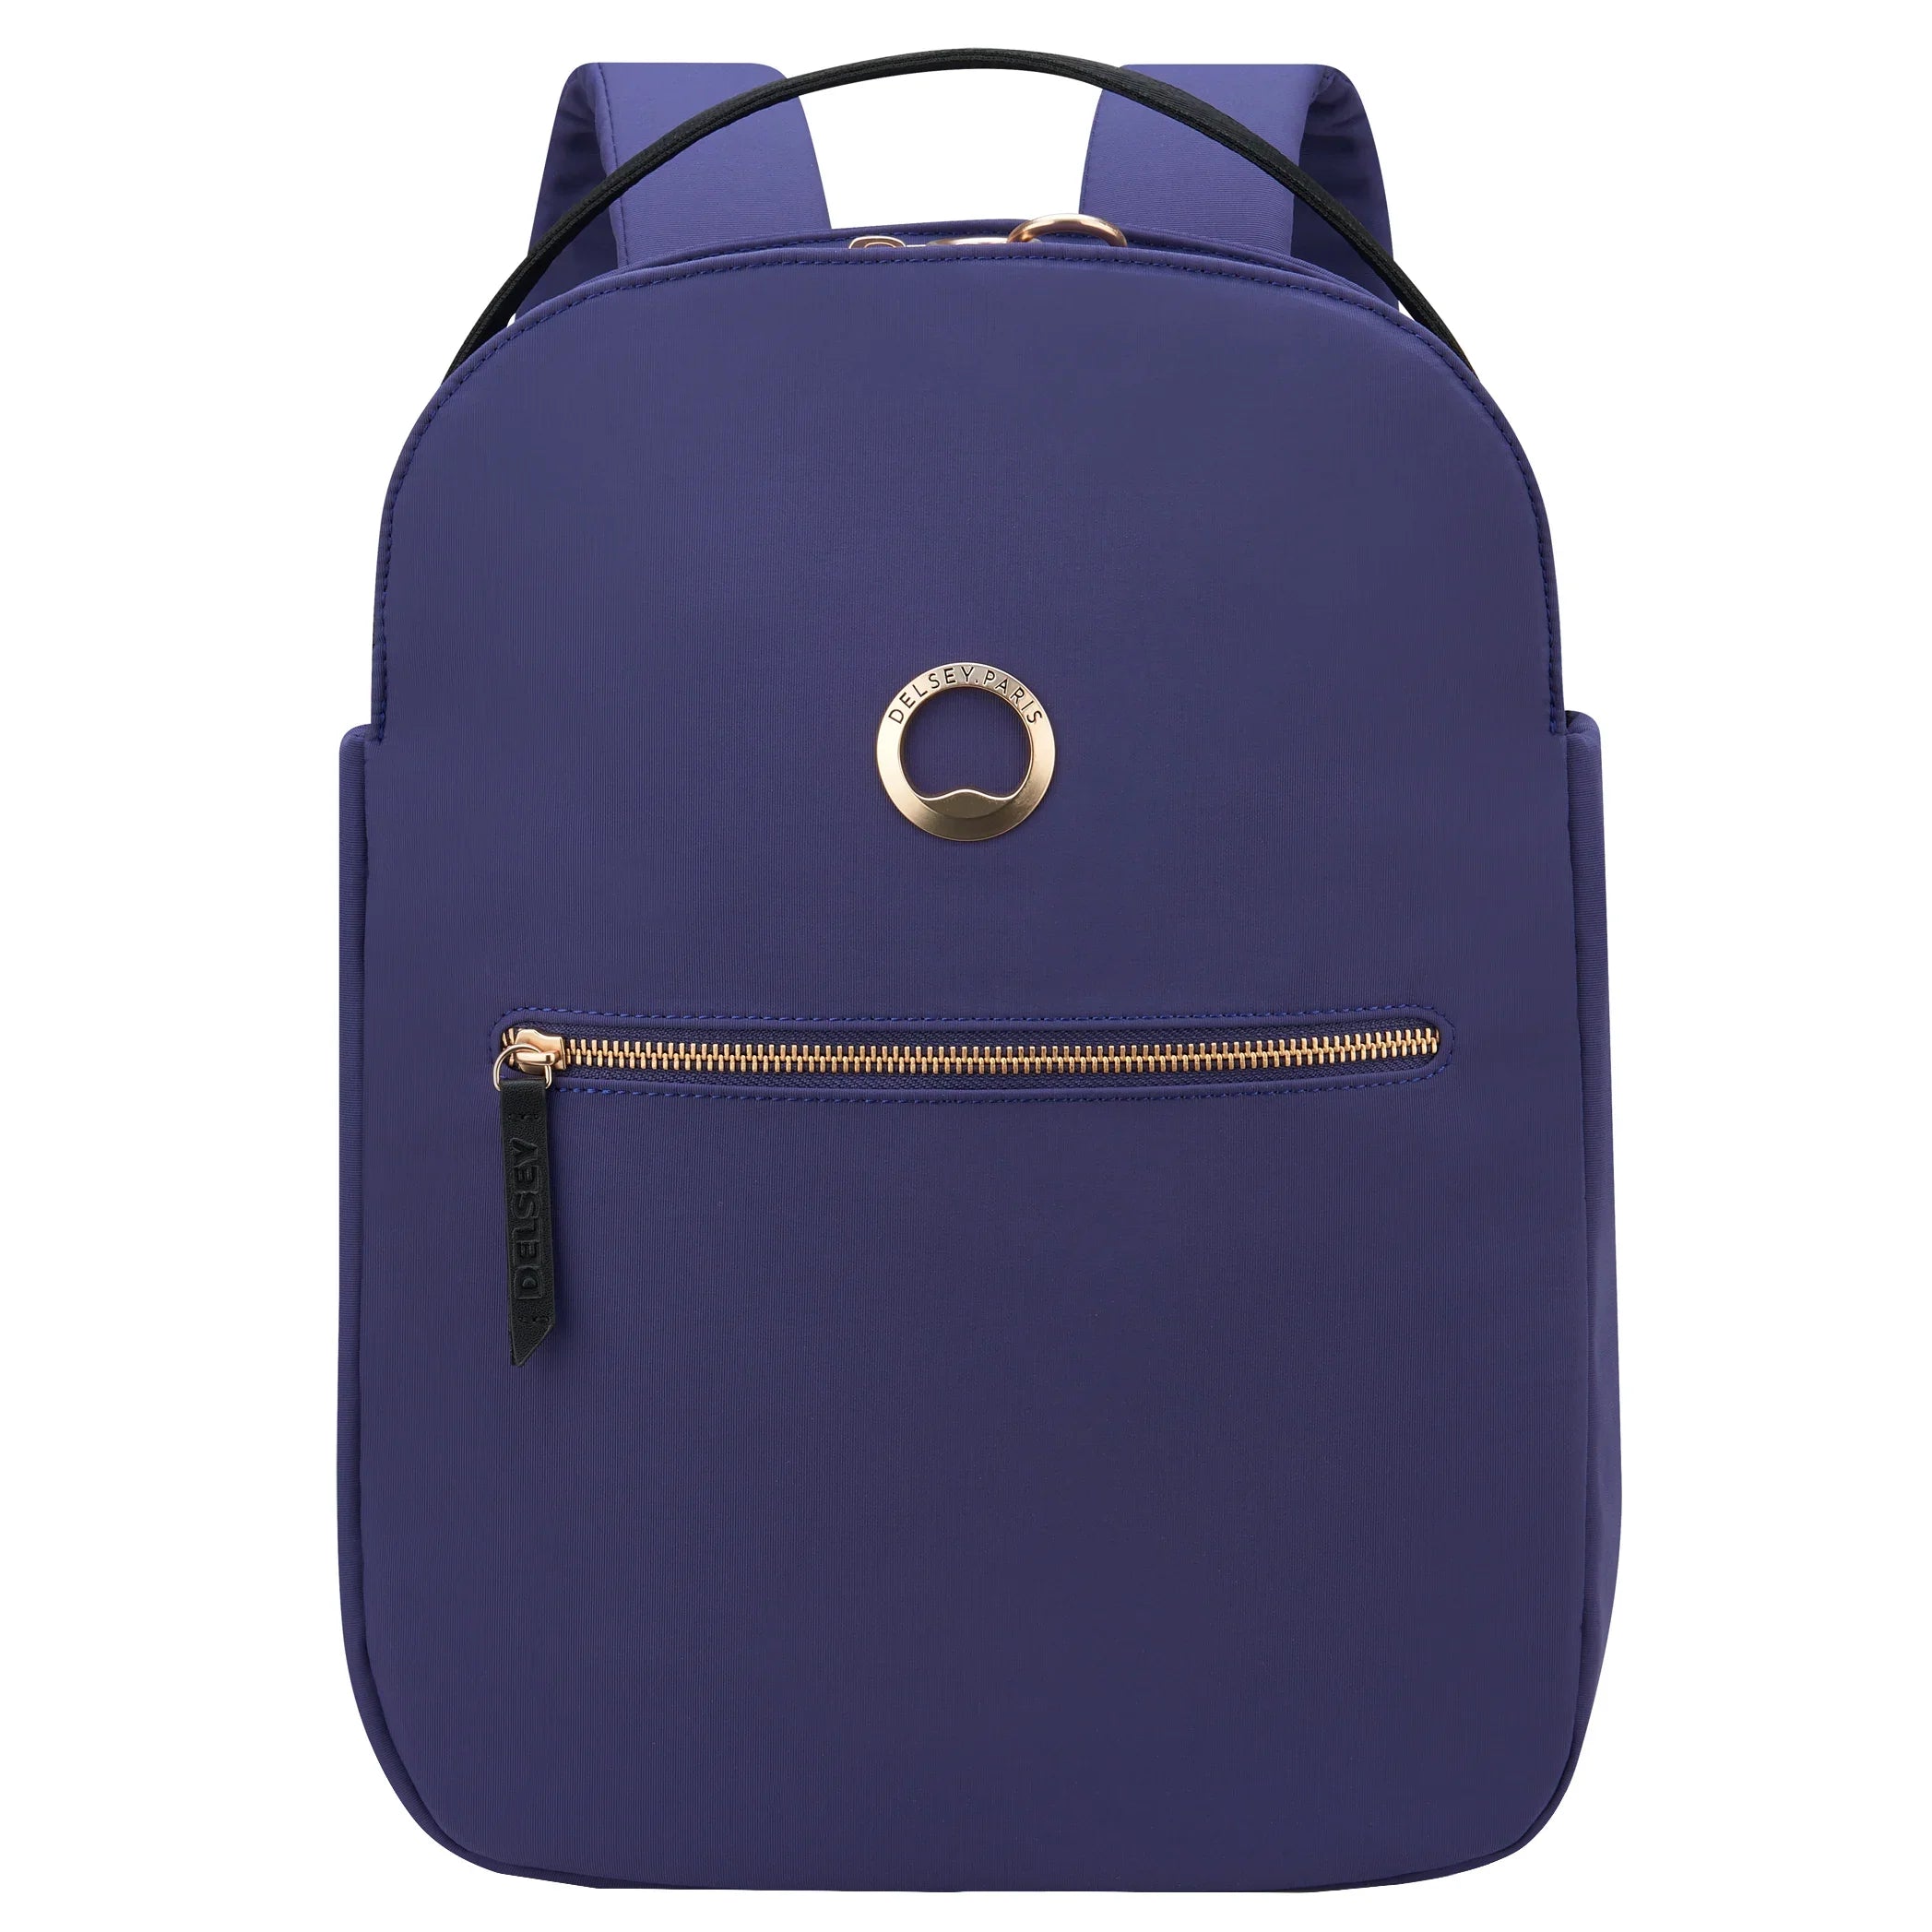 Delsey Securstyle laptop backpack 38 cm - Navy blue